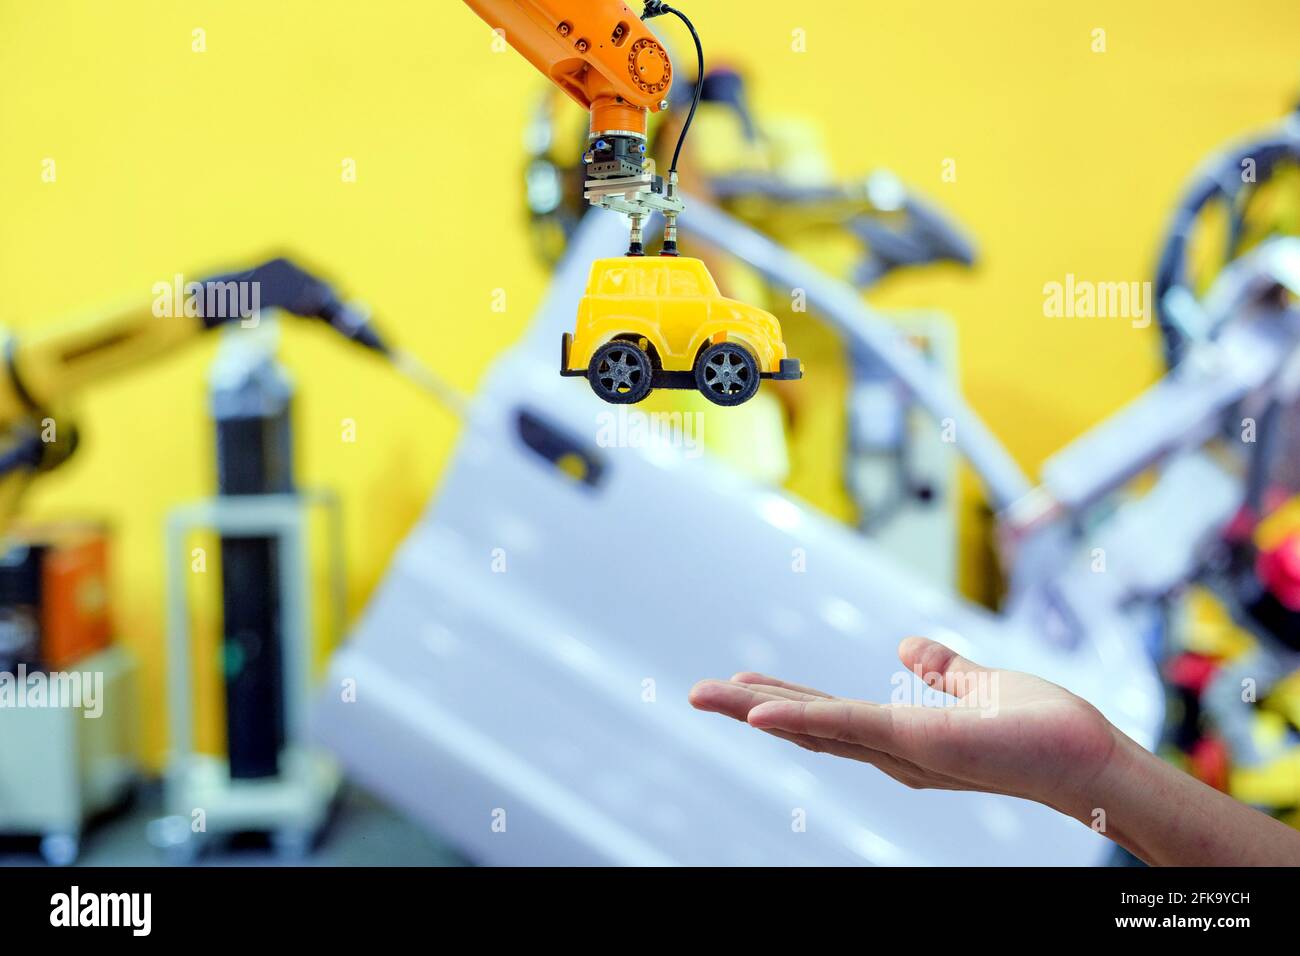 Primo piano industriale robotica che afferra il giocattolo giallo inviare a mano umano su sfondo sfocato Smart Factory, industria 4.0 e tecnologia iot concepะ Foto Stock